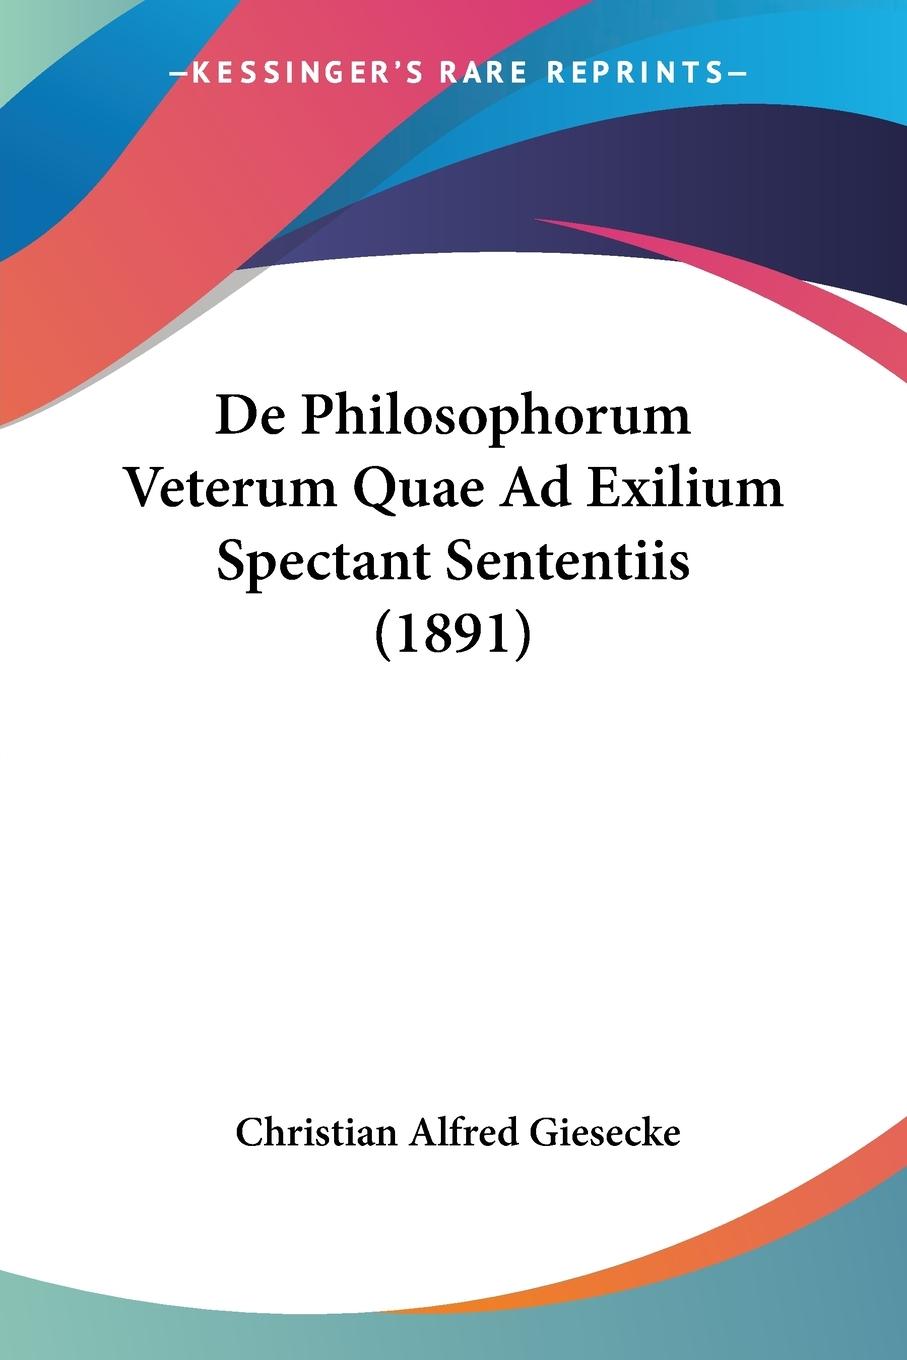 De Philosophorum Veterum Quae Ad Exilium Spectant Sententiis (1891) - Giesecke, Christian Alfred